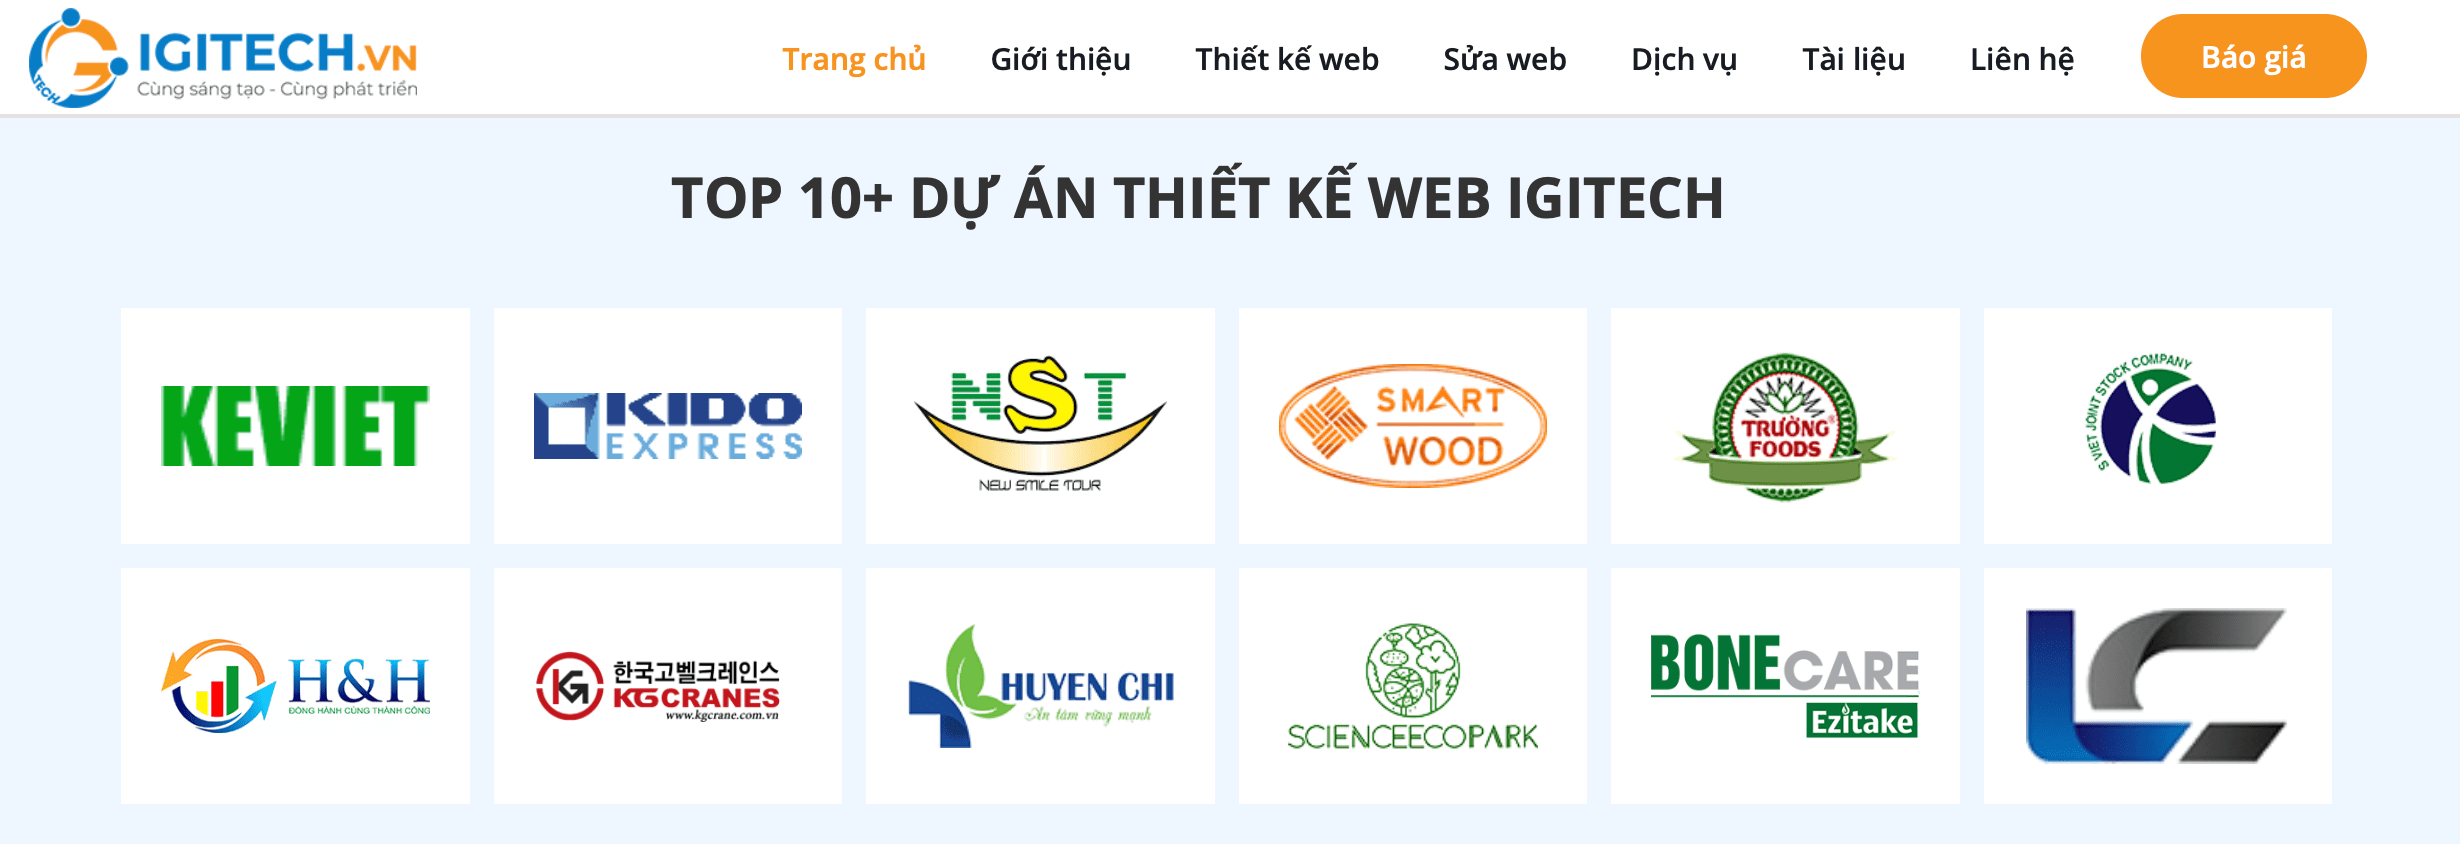 thiết kế web uy tín tại Hà Nội